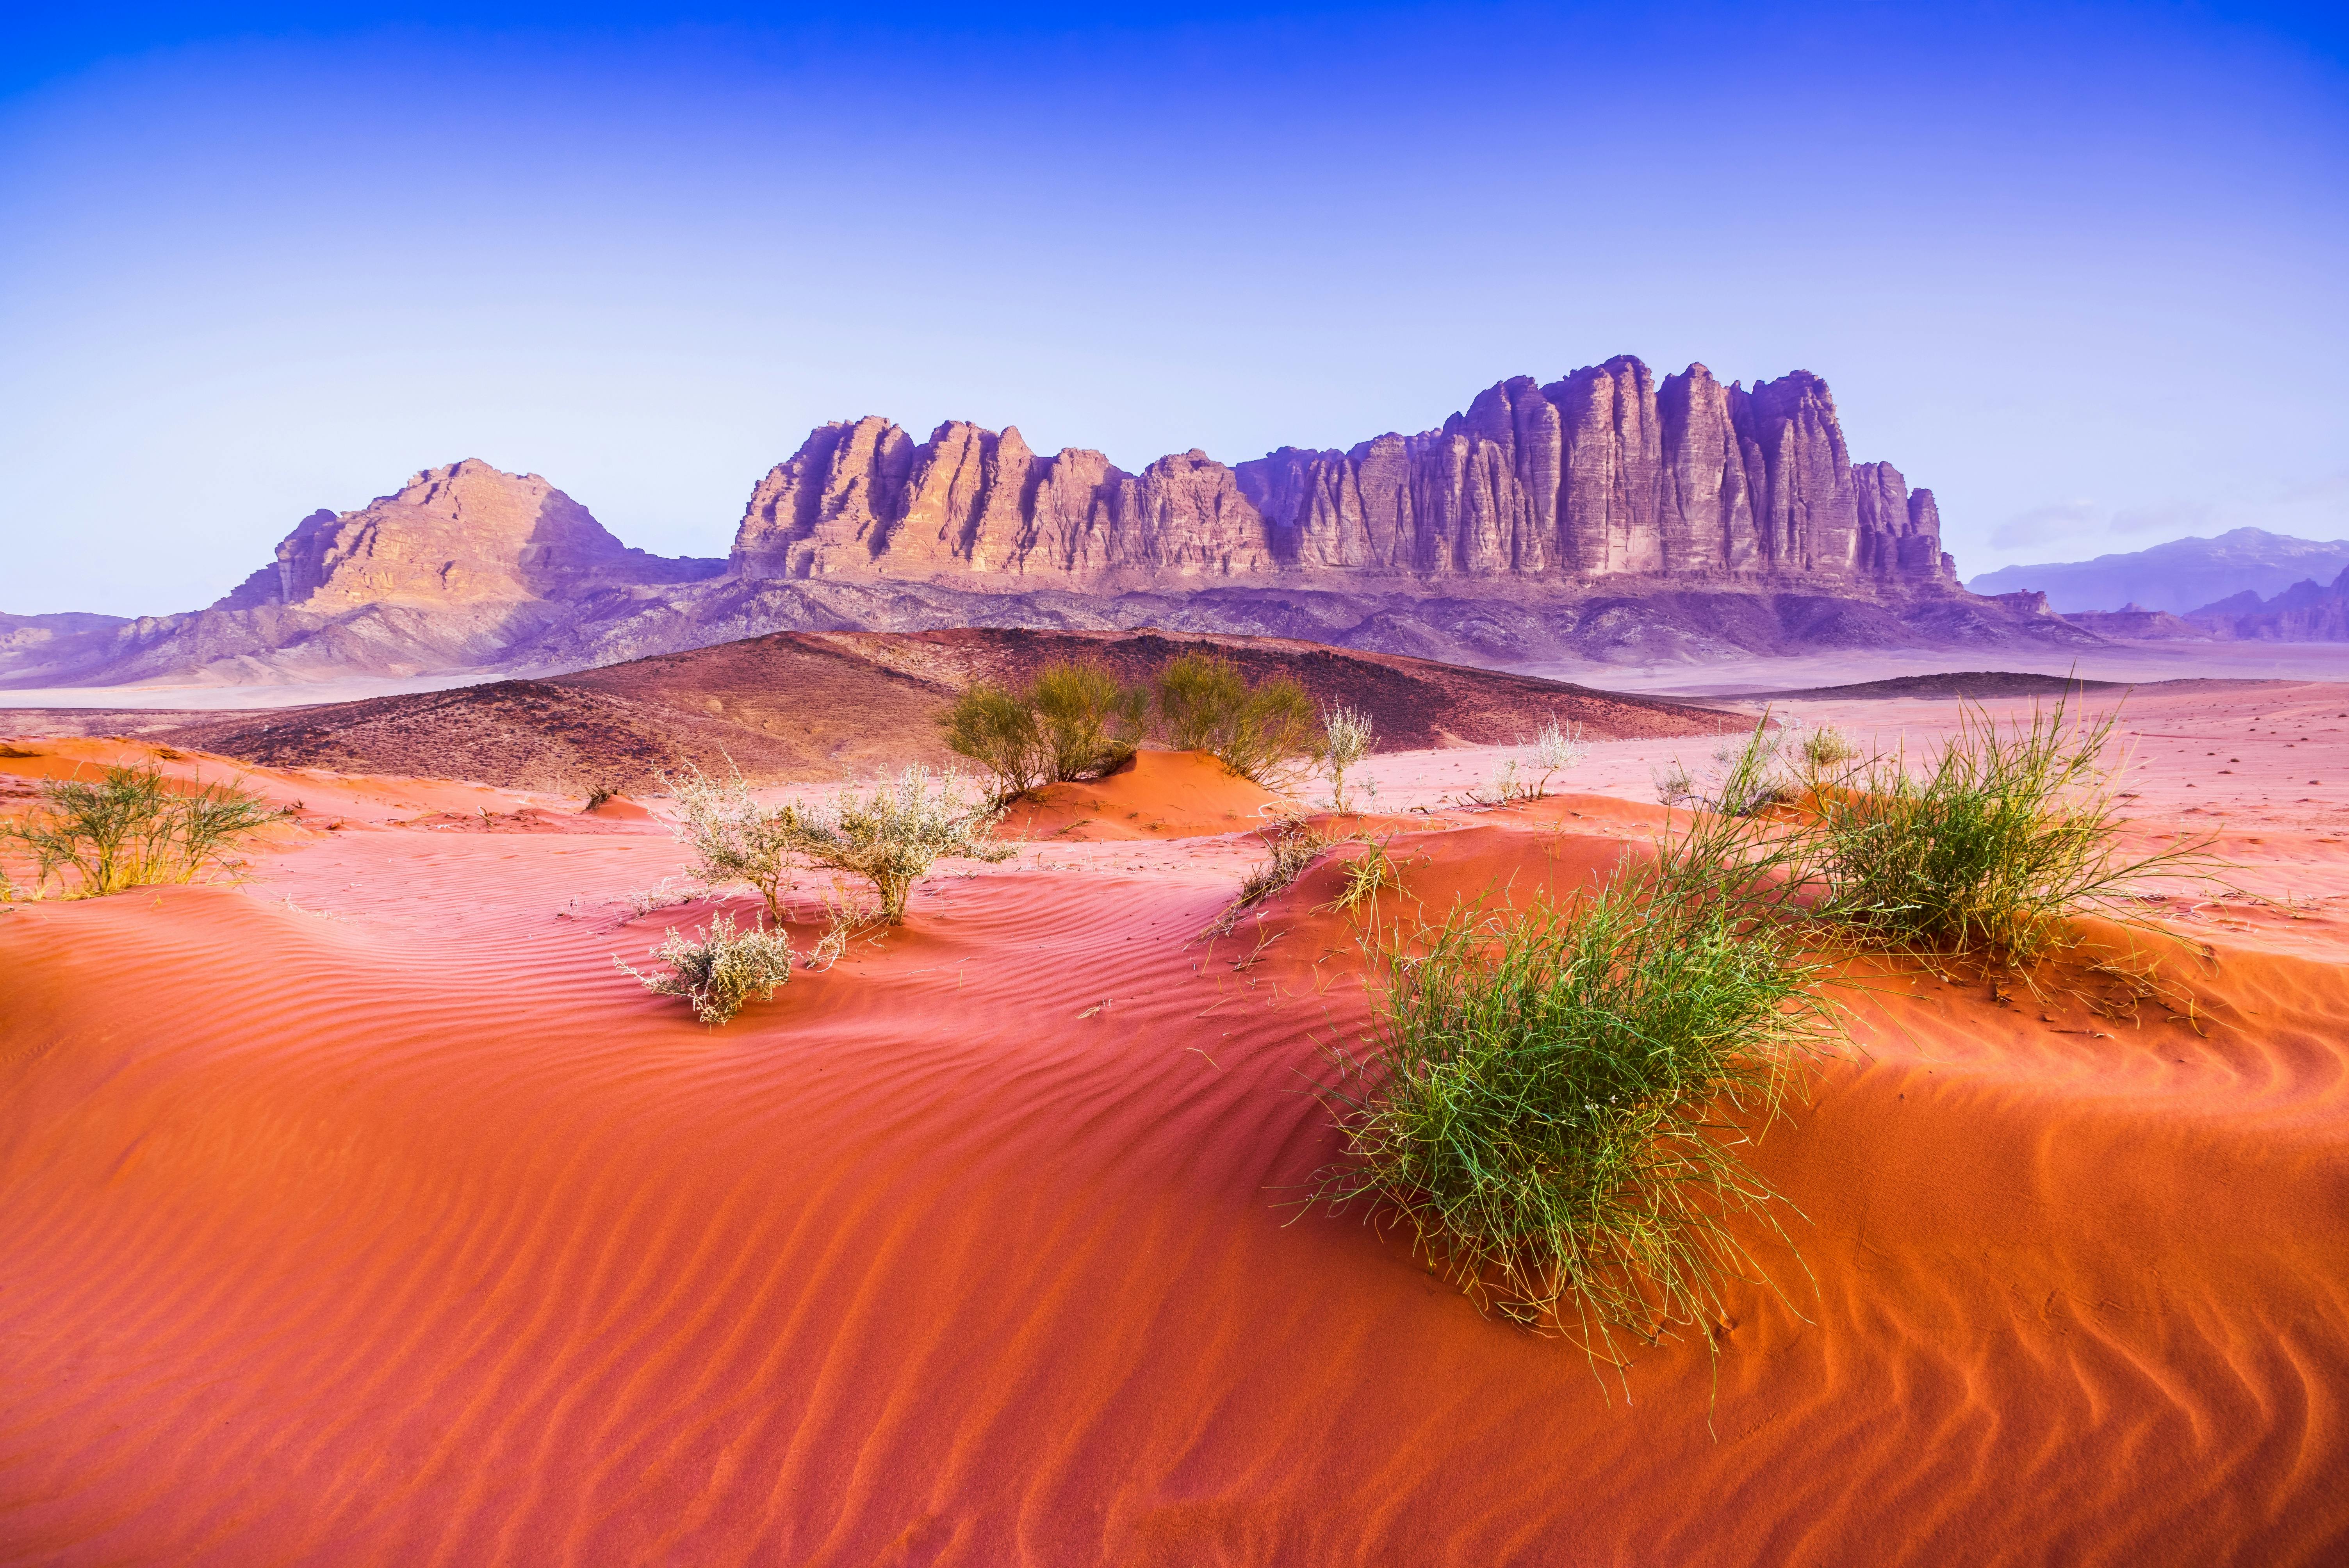 Viaje privado de un día completo a Wadi Rum Valley of Moon Martian Desert desde el Mar Muerto